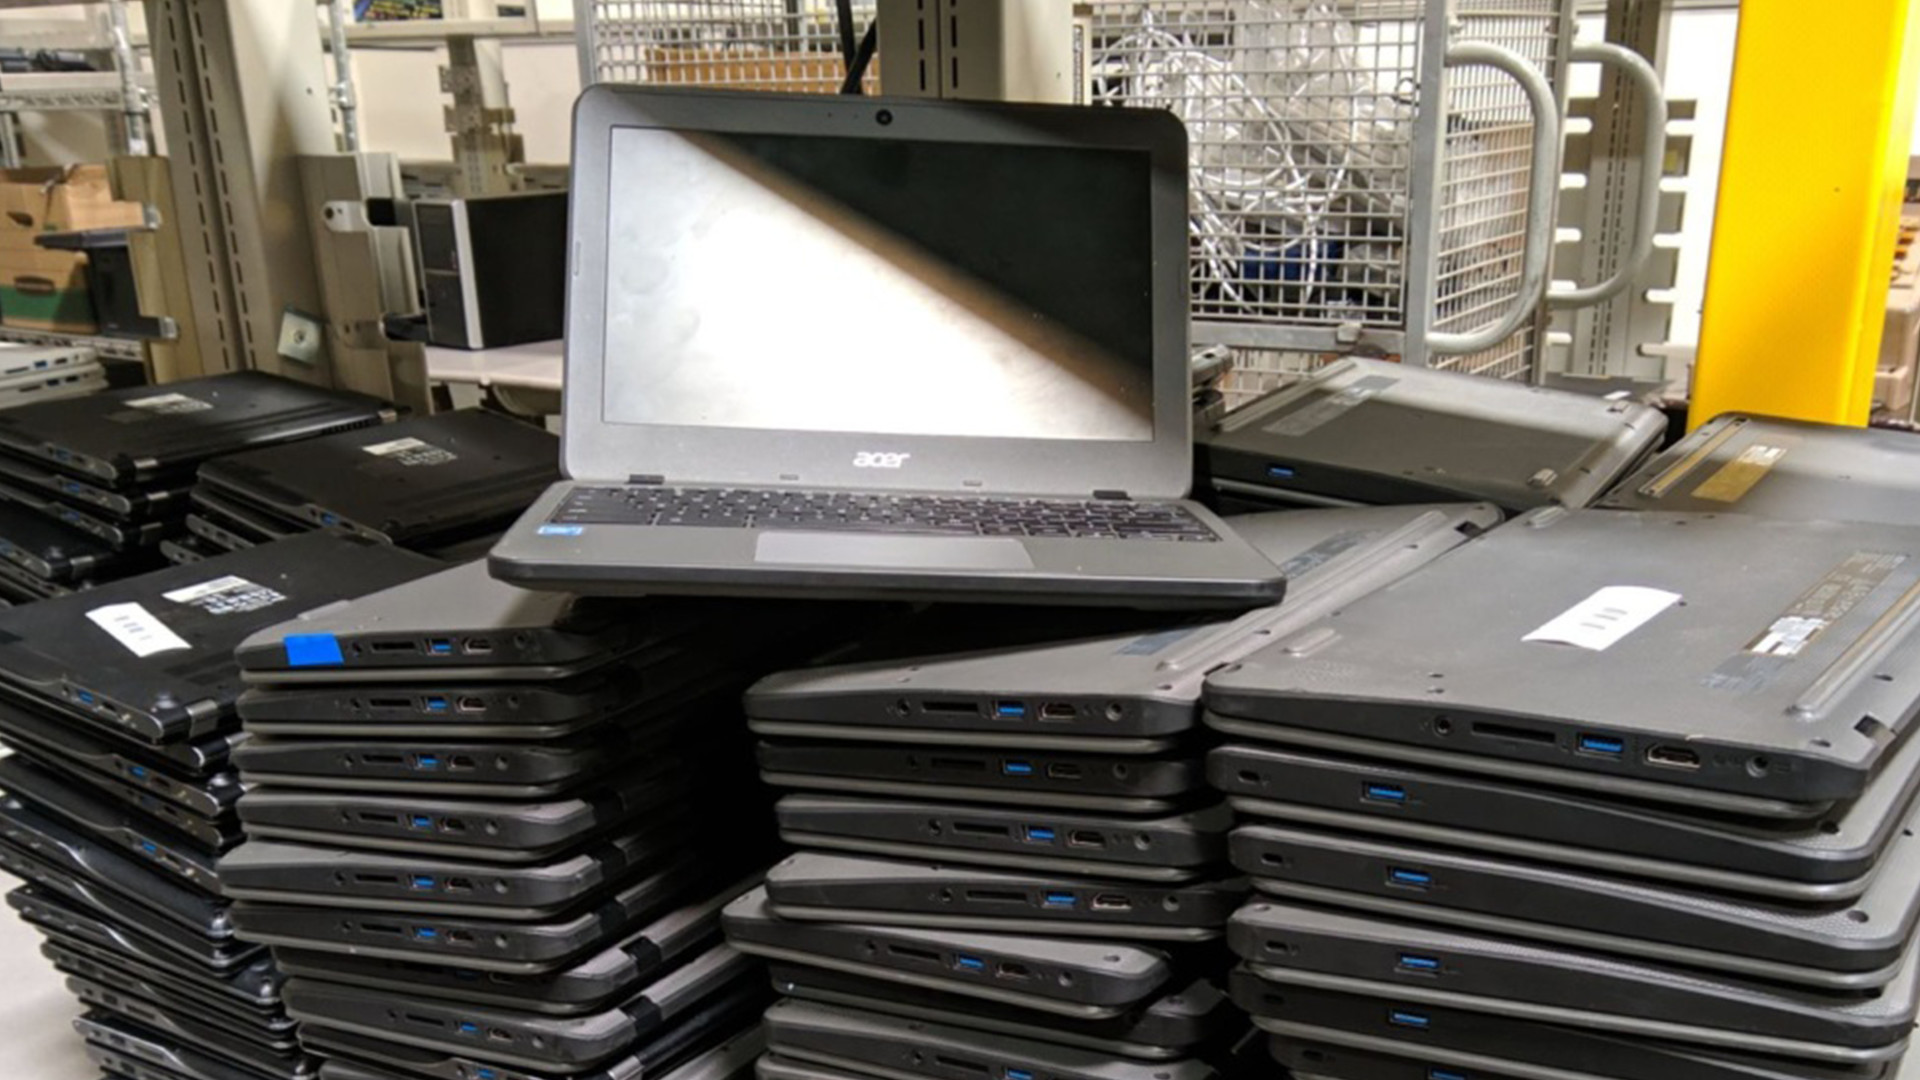 Stacks of Chromebooks